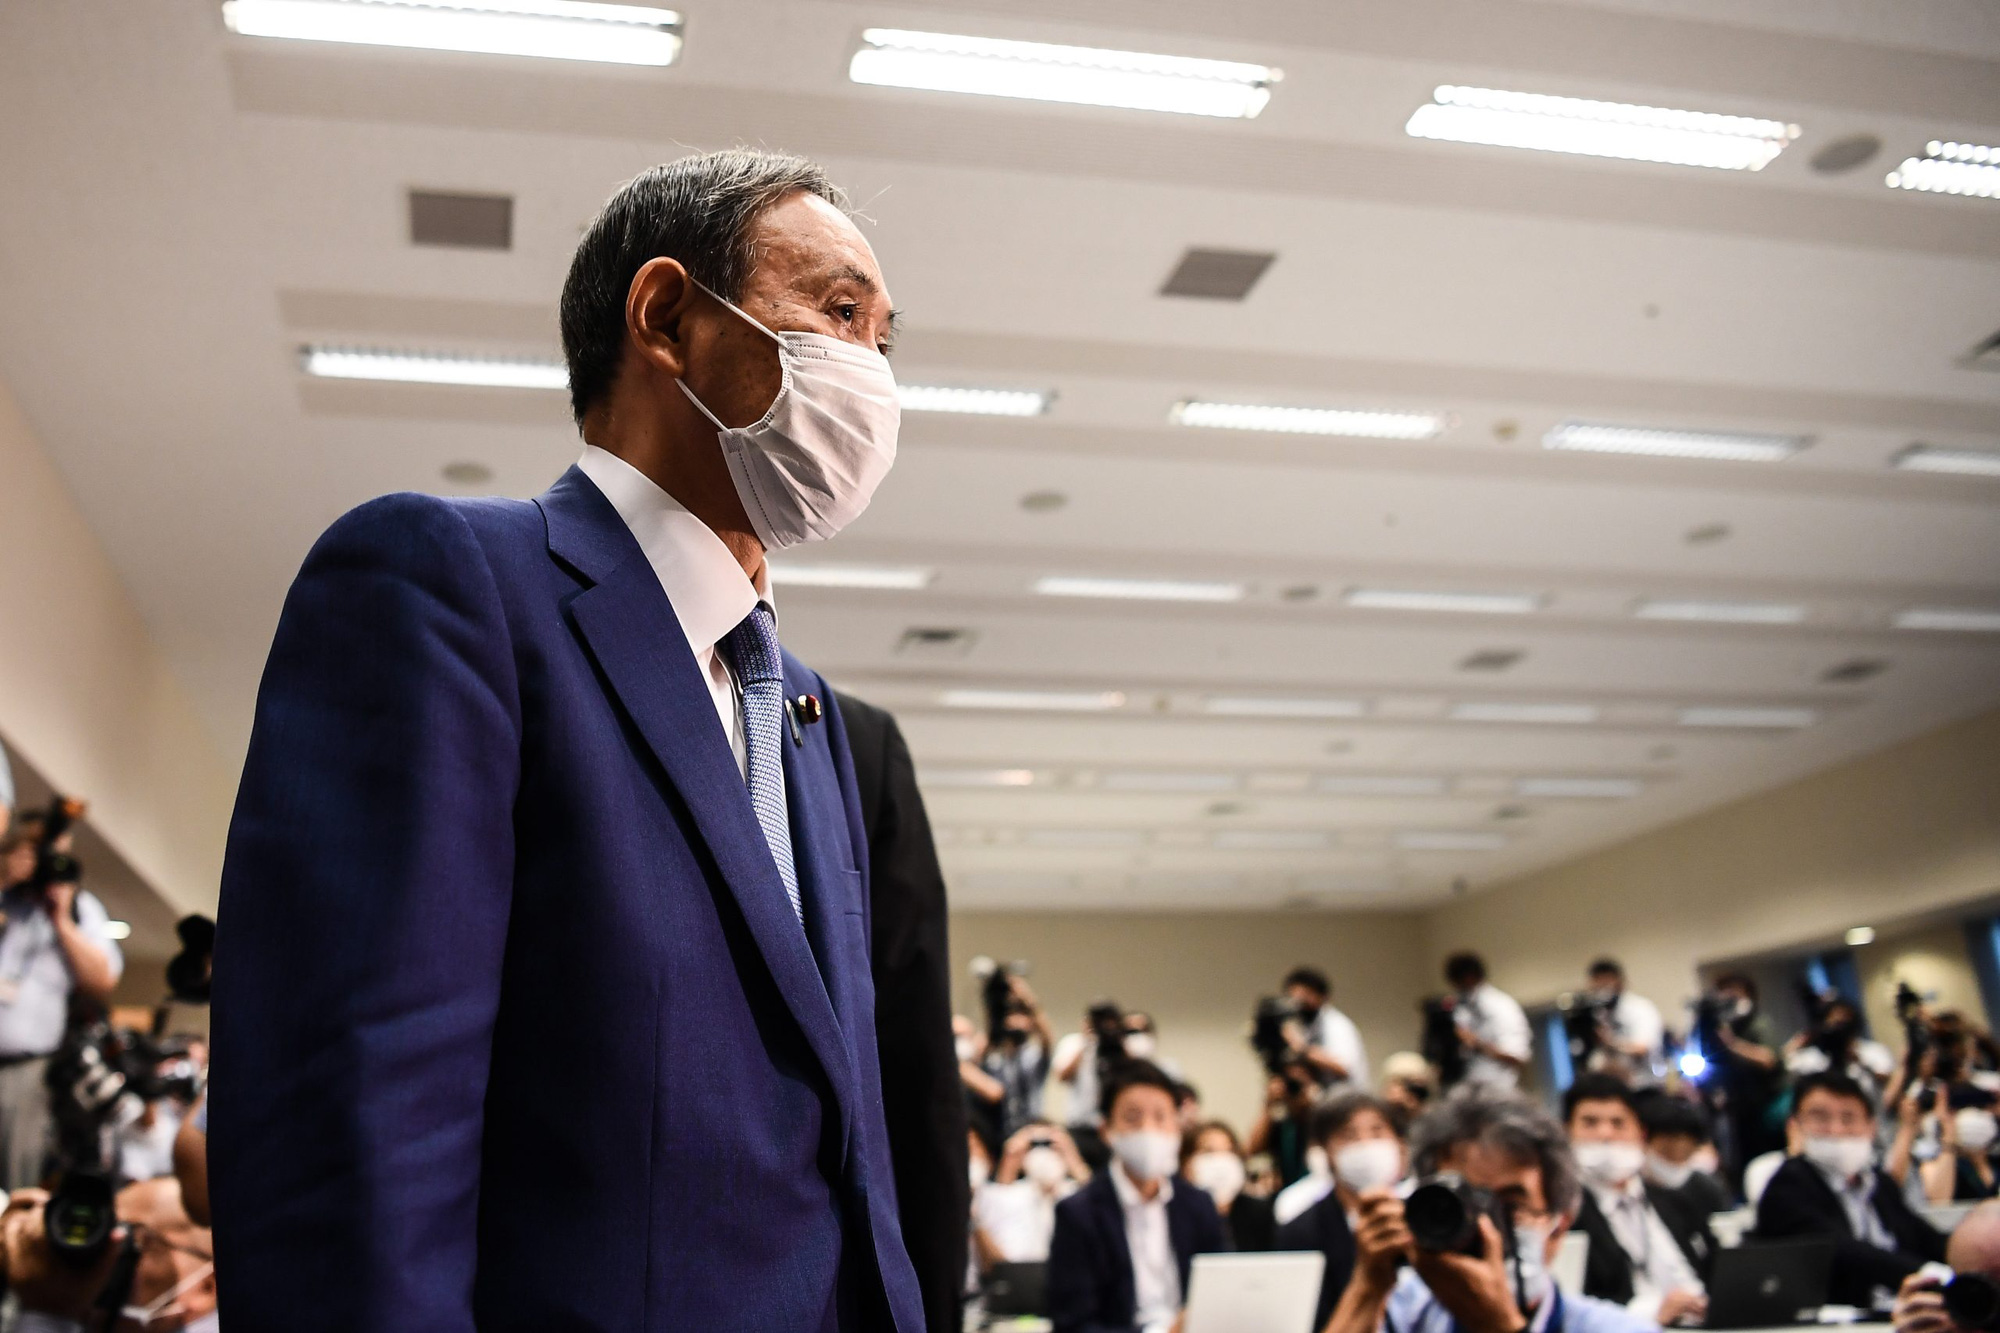 Cuộc sống lành mạnh của chính trị gia 71 tuổi sắp trở thành tân Thủ tướng Nhật Bản: Sáng đi bộ, đêm gập bụng, quyết tâm giảm 14 kg để tránh bệnh tật - Ảnh 4.